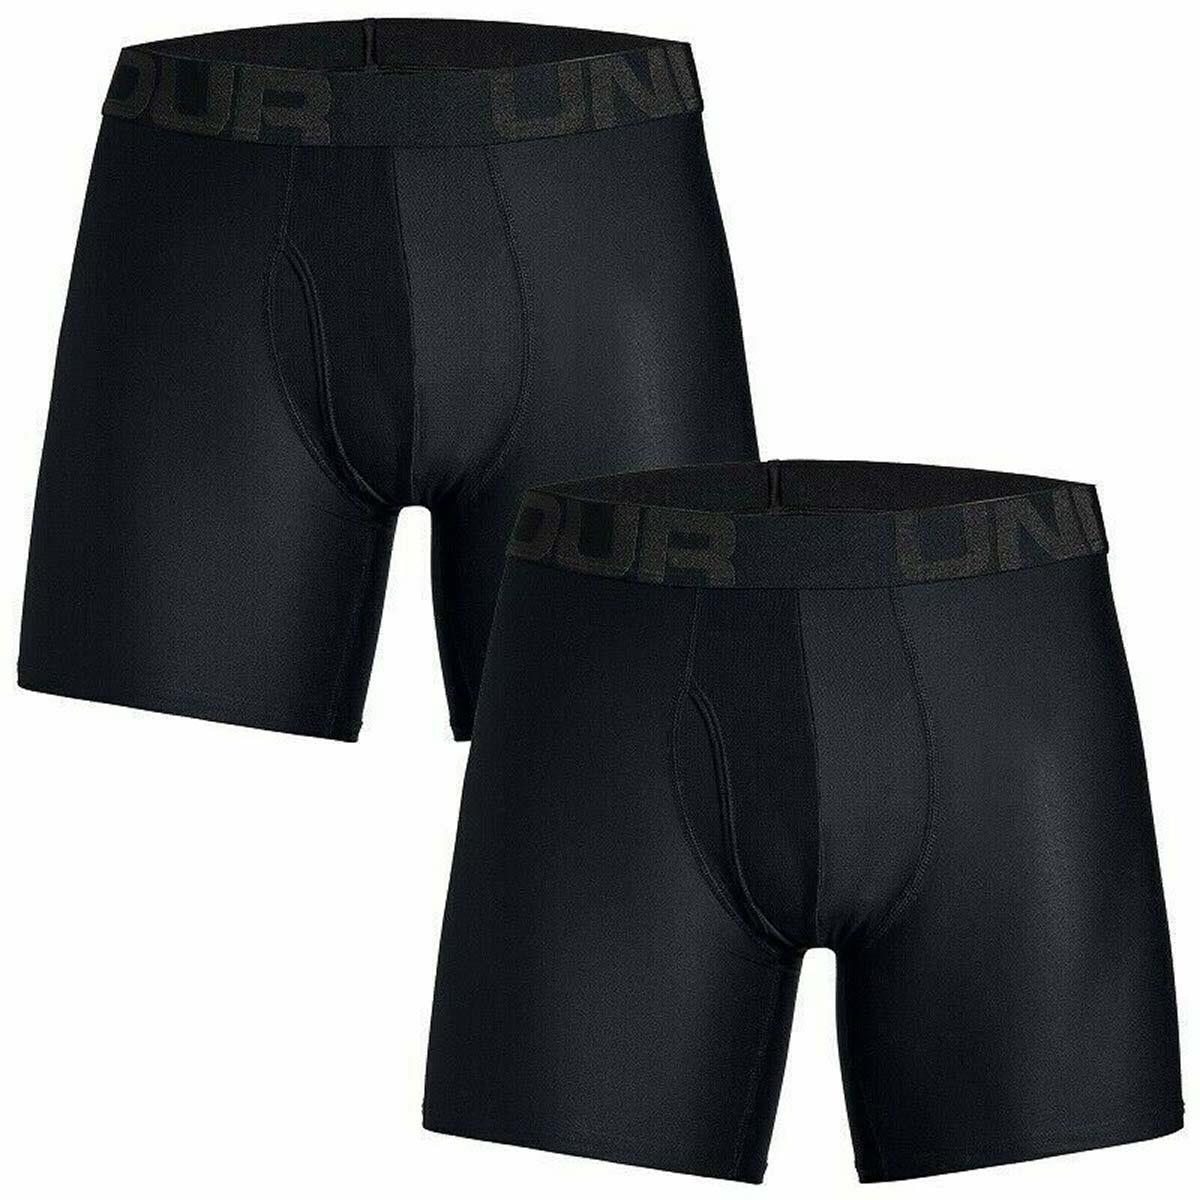  UA Tech 6in 2 Pack, Navy - men's underwear - UNDER